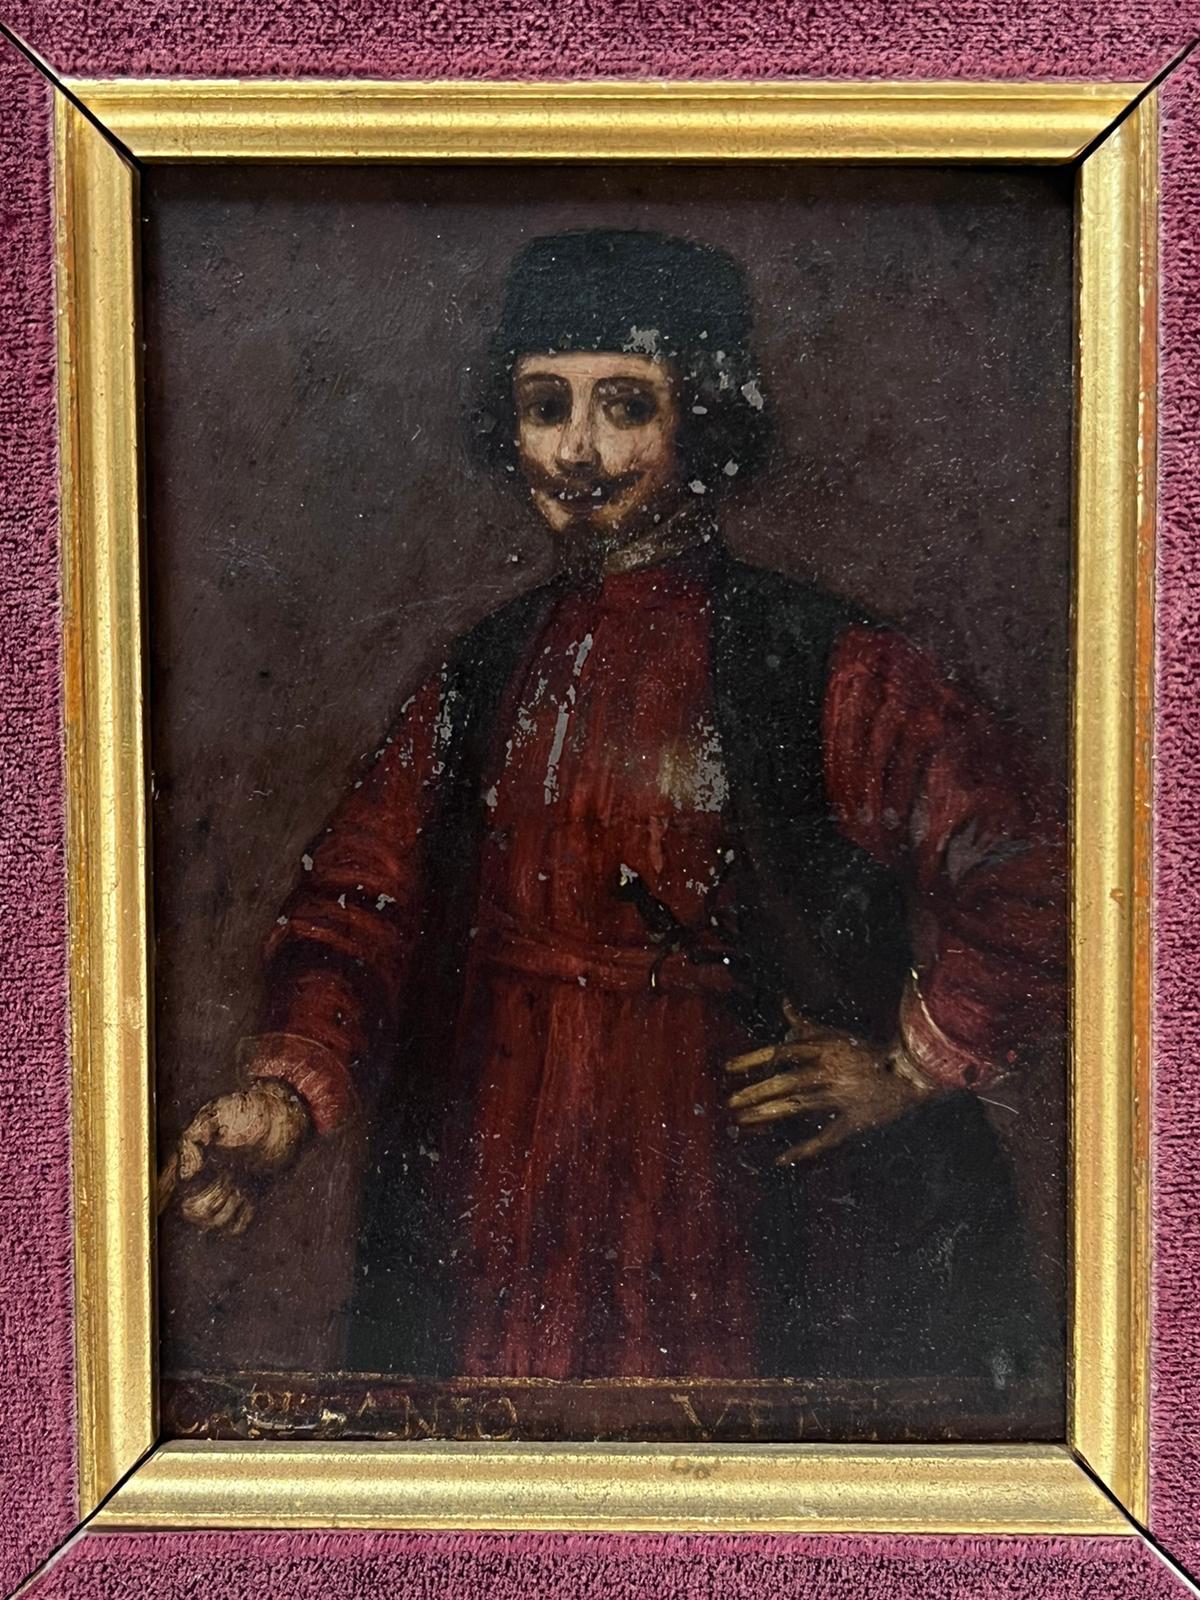 Italienisches Ölgemälde des 18. Jahrhunderts, Porträt eines Kaufmanns – Painting von 18th Century Venetian School